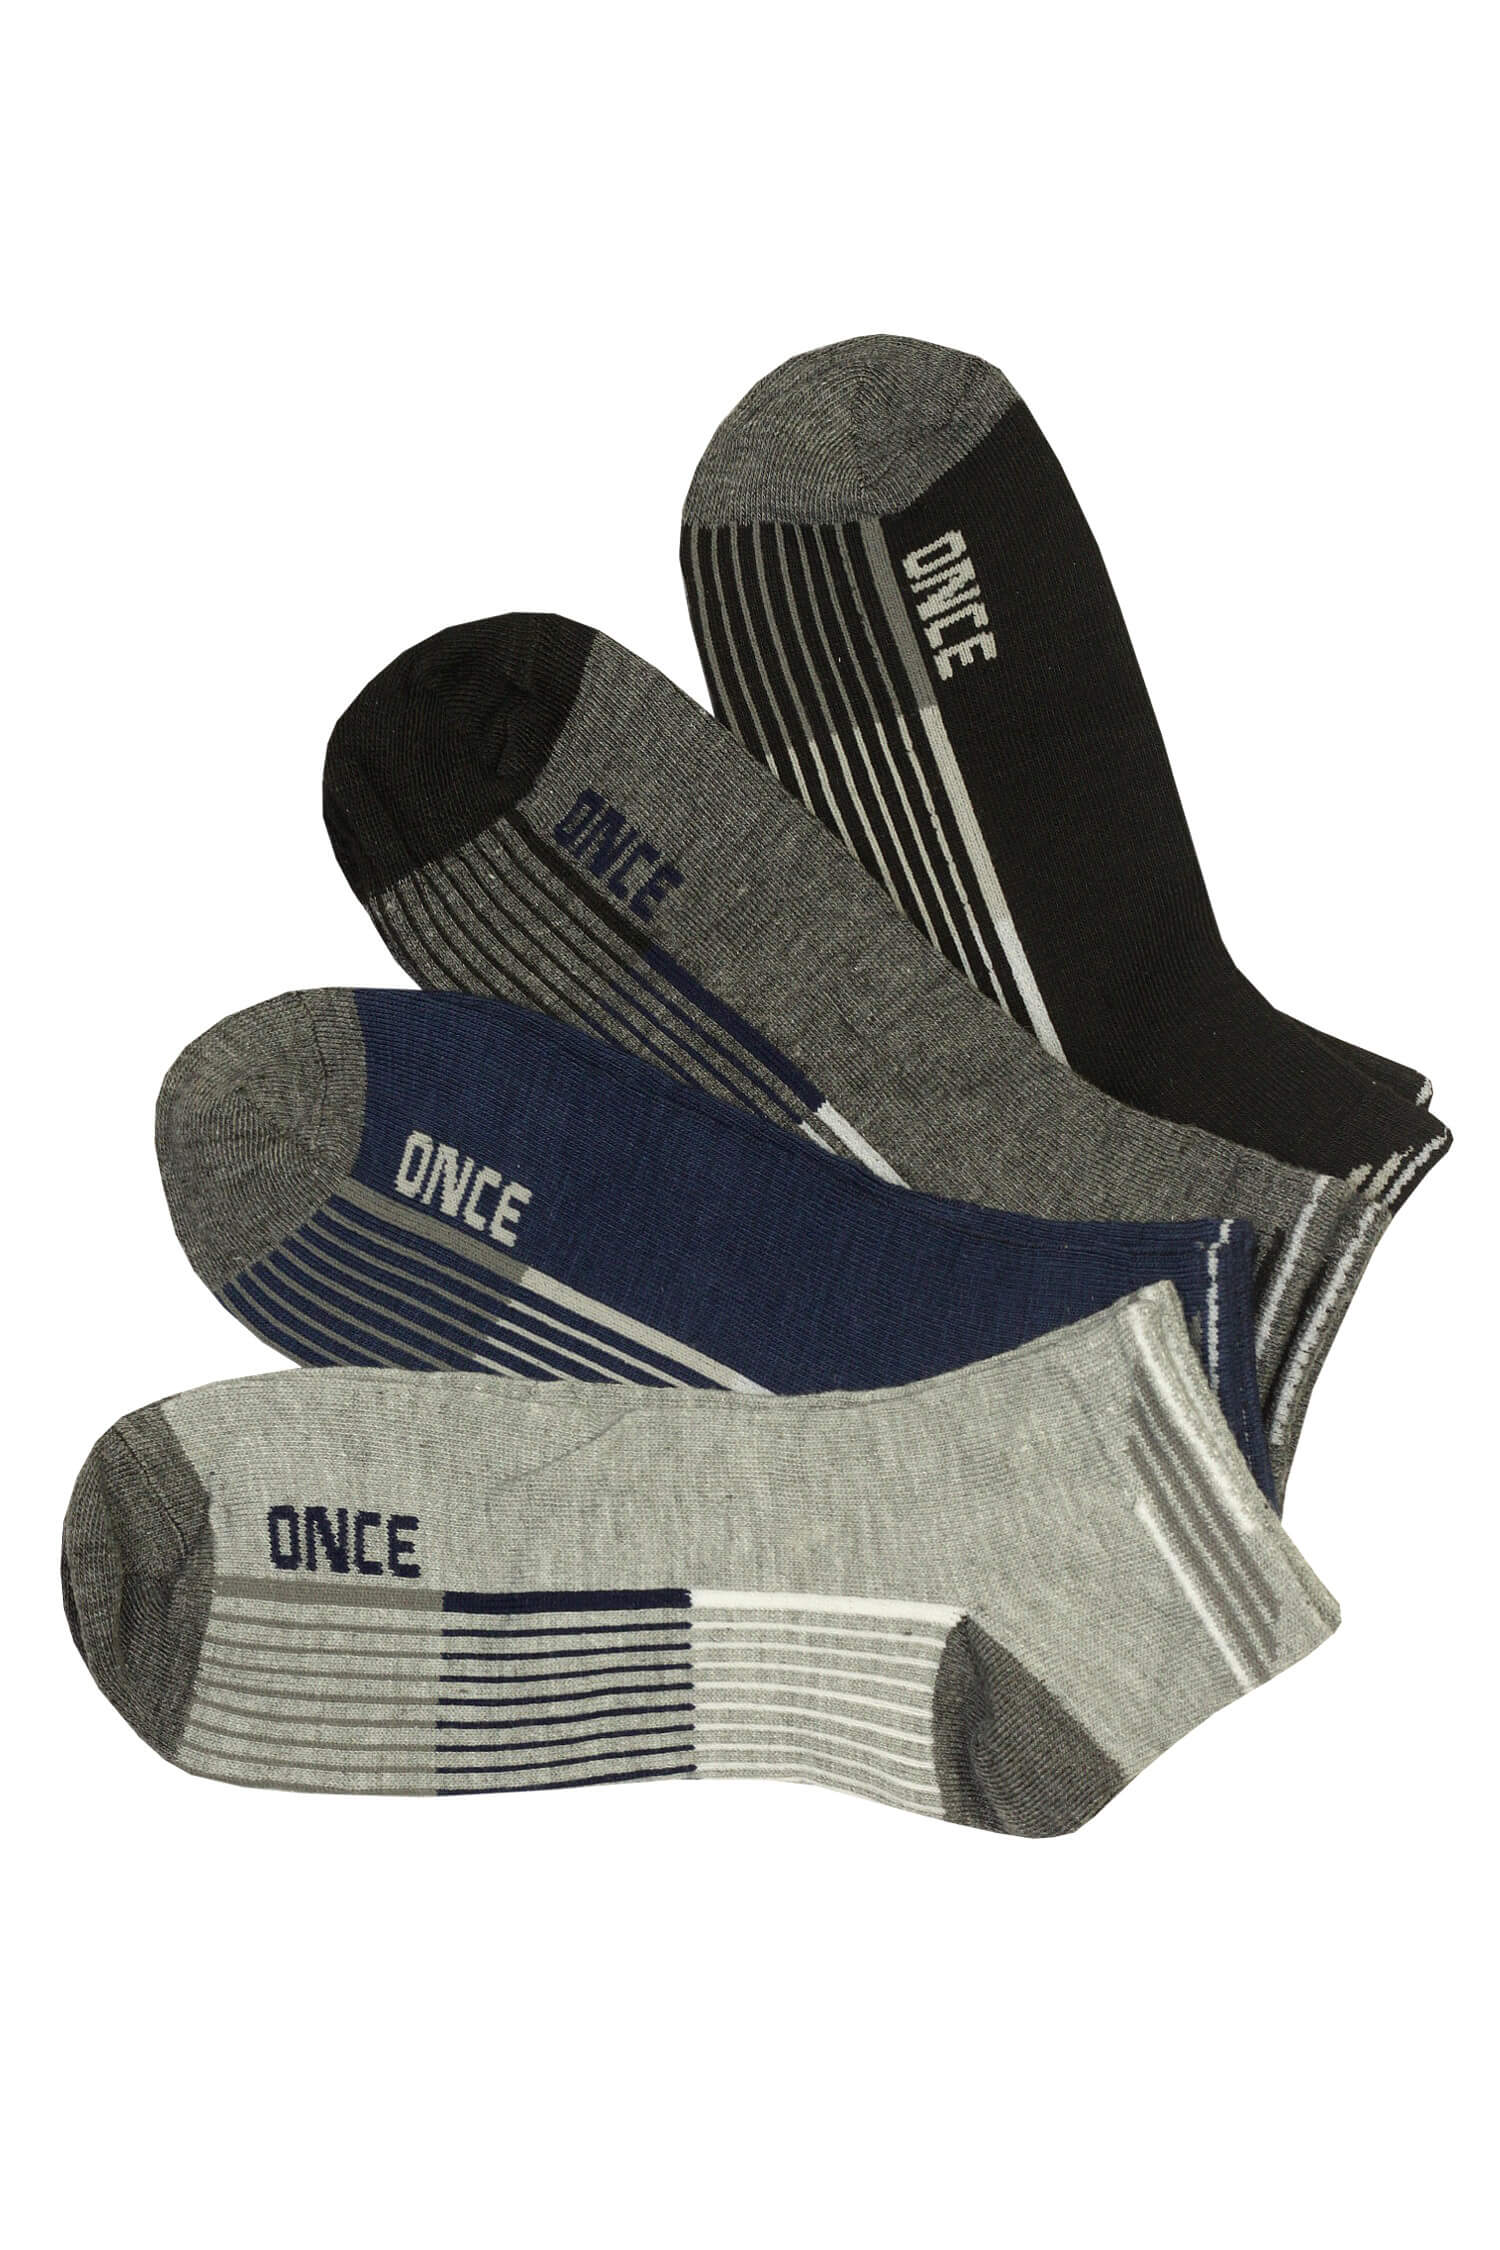 Krátké pánské ponožky bavlna GM426 - 3 páry 40-43 vícebarevná